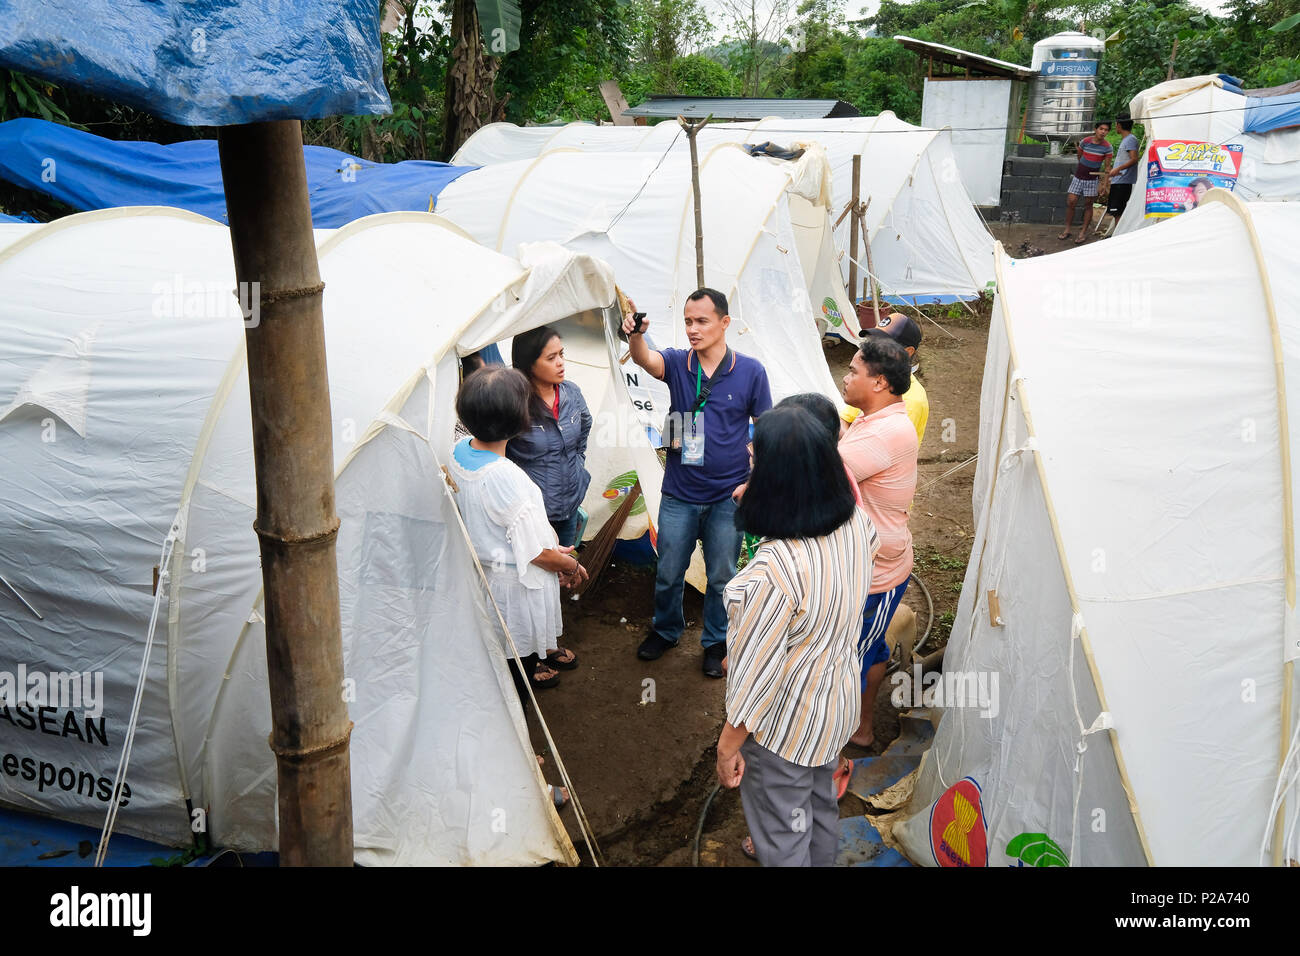 Christian desplazados refugiados en un campamento a las afueras de la ciudad en ruinas Marawi, en la isla de Mindanao, Filipinas - Christliche Flüchtlinge en einem Zeltlager der Stadt zerstörten Marawi en einem Zeltlager am Rande der Stadt. Insel Mindanao, Philippinen Foto de stock